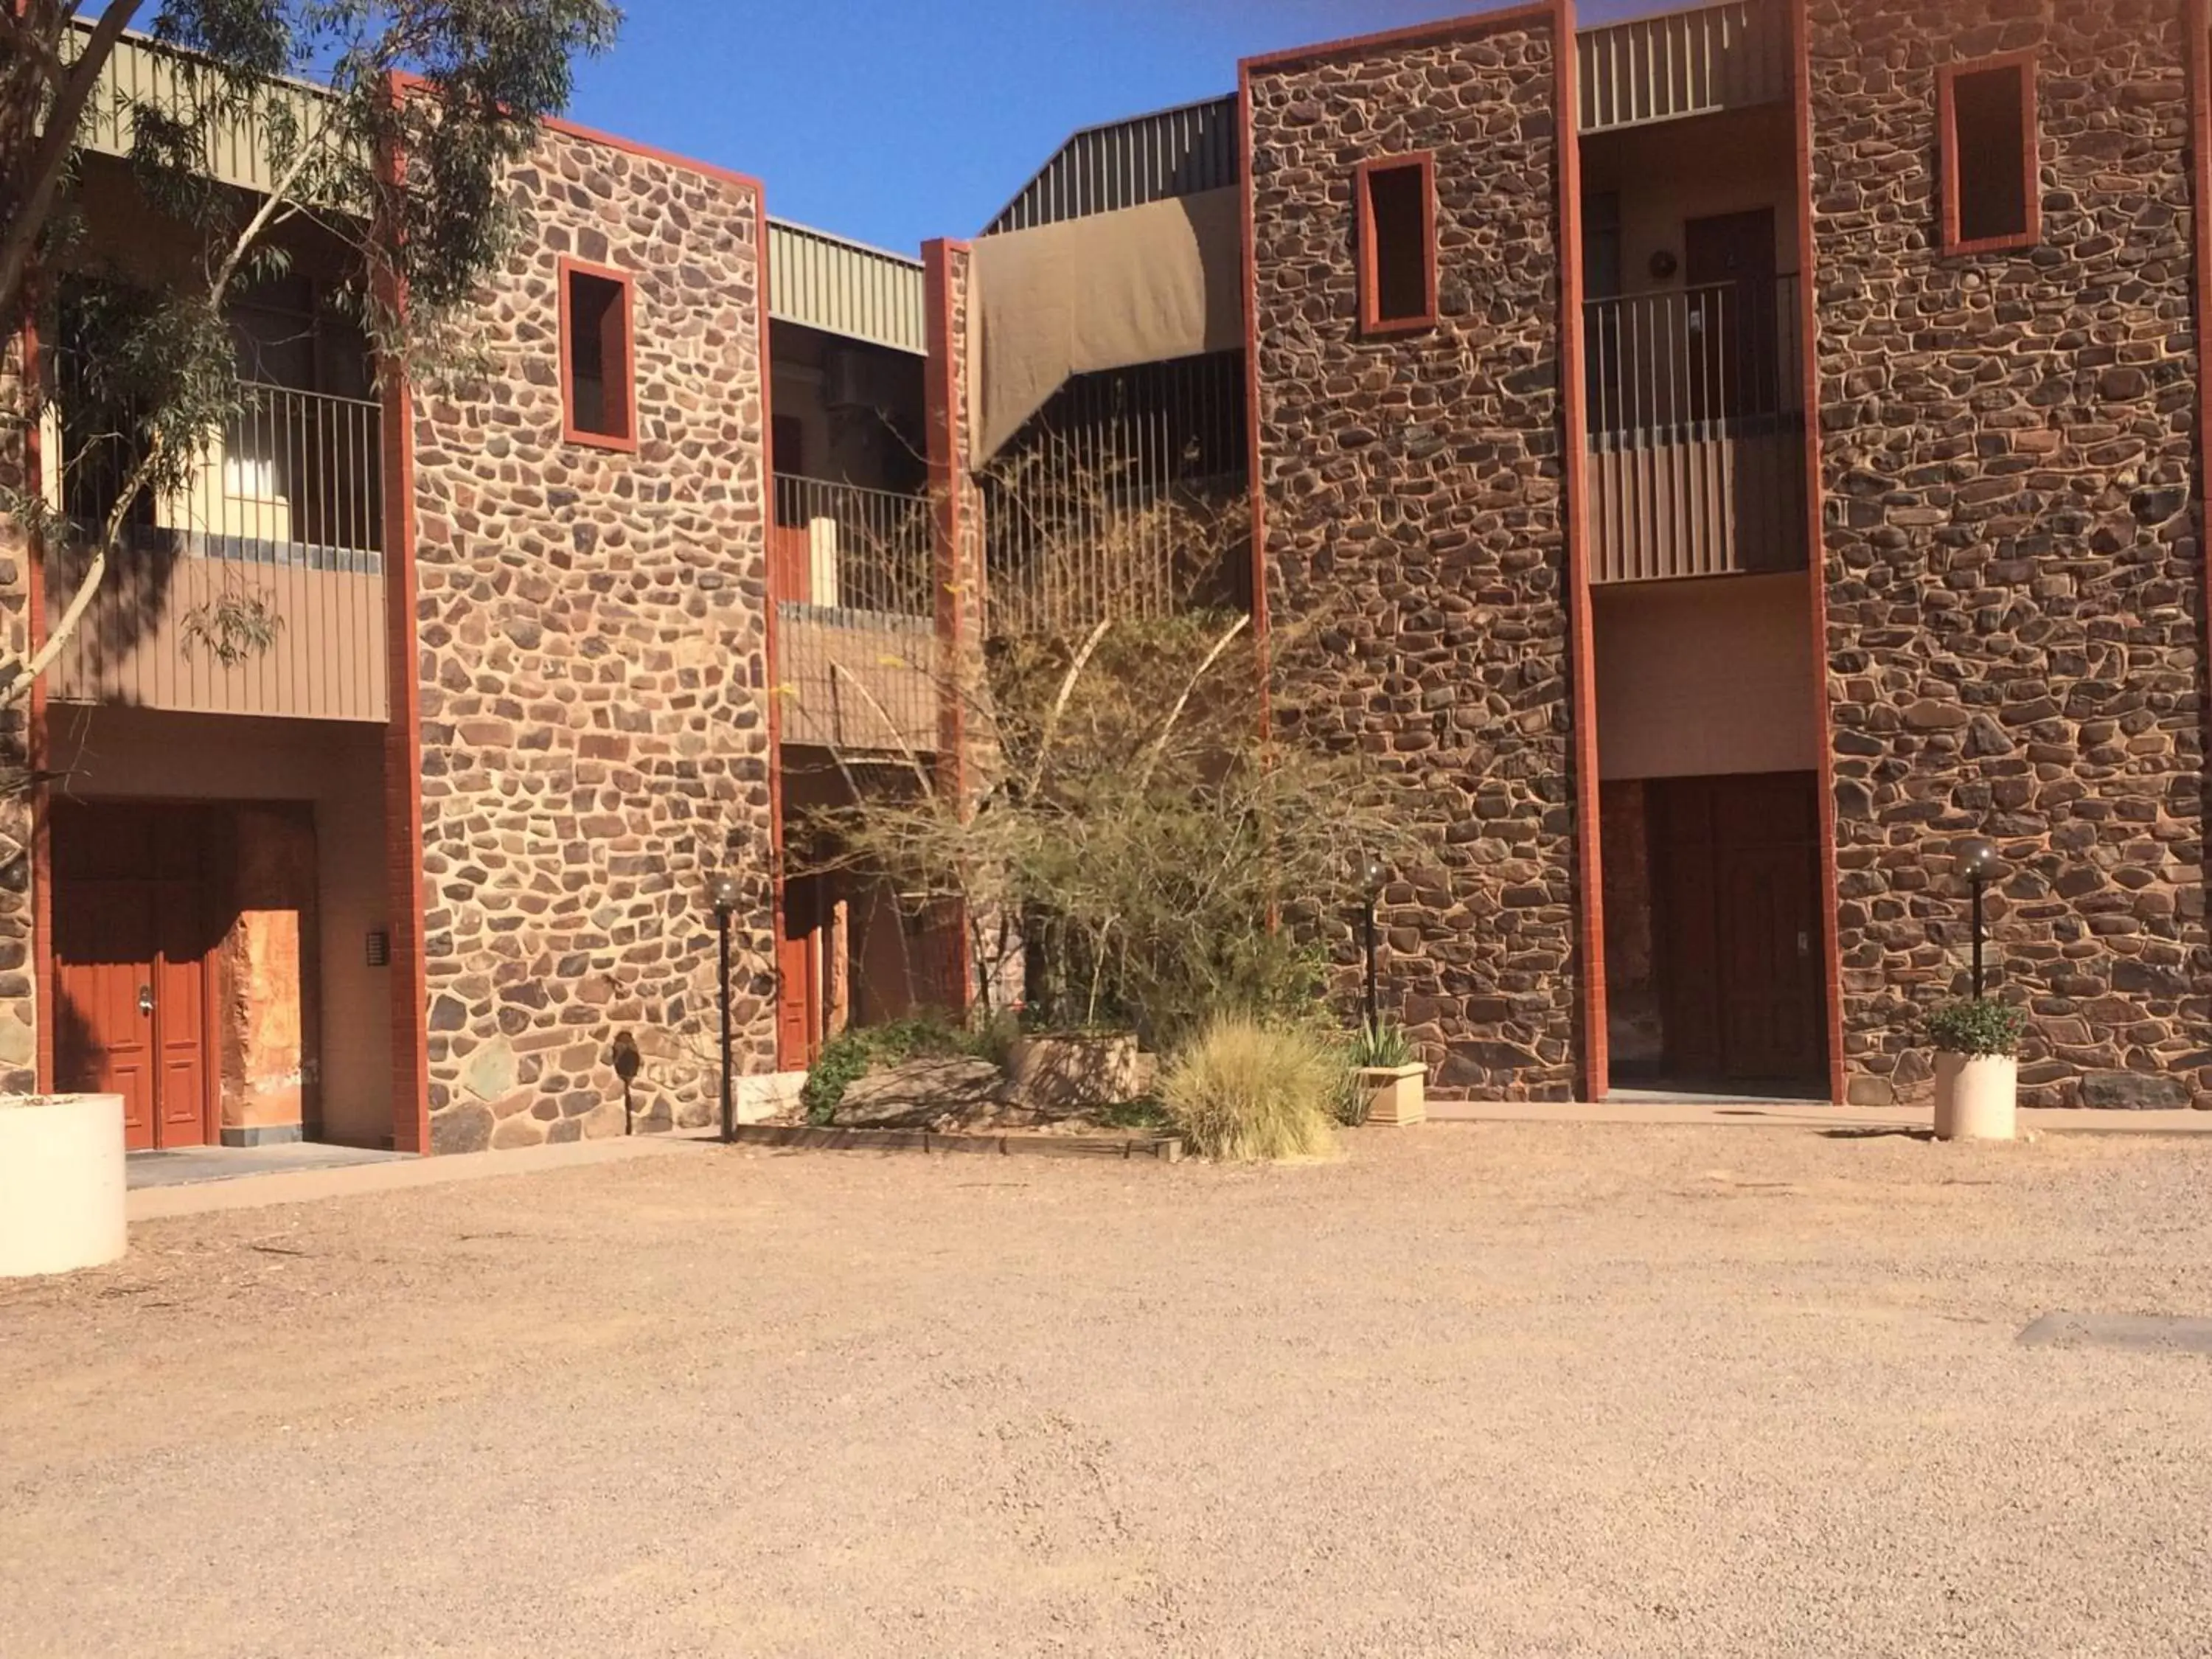 Garden, Property Building in Desert Cave Hotel